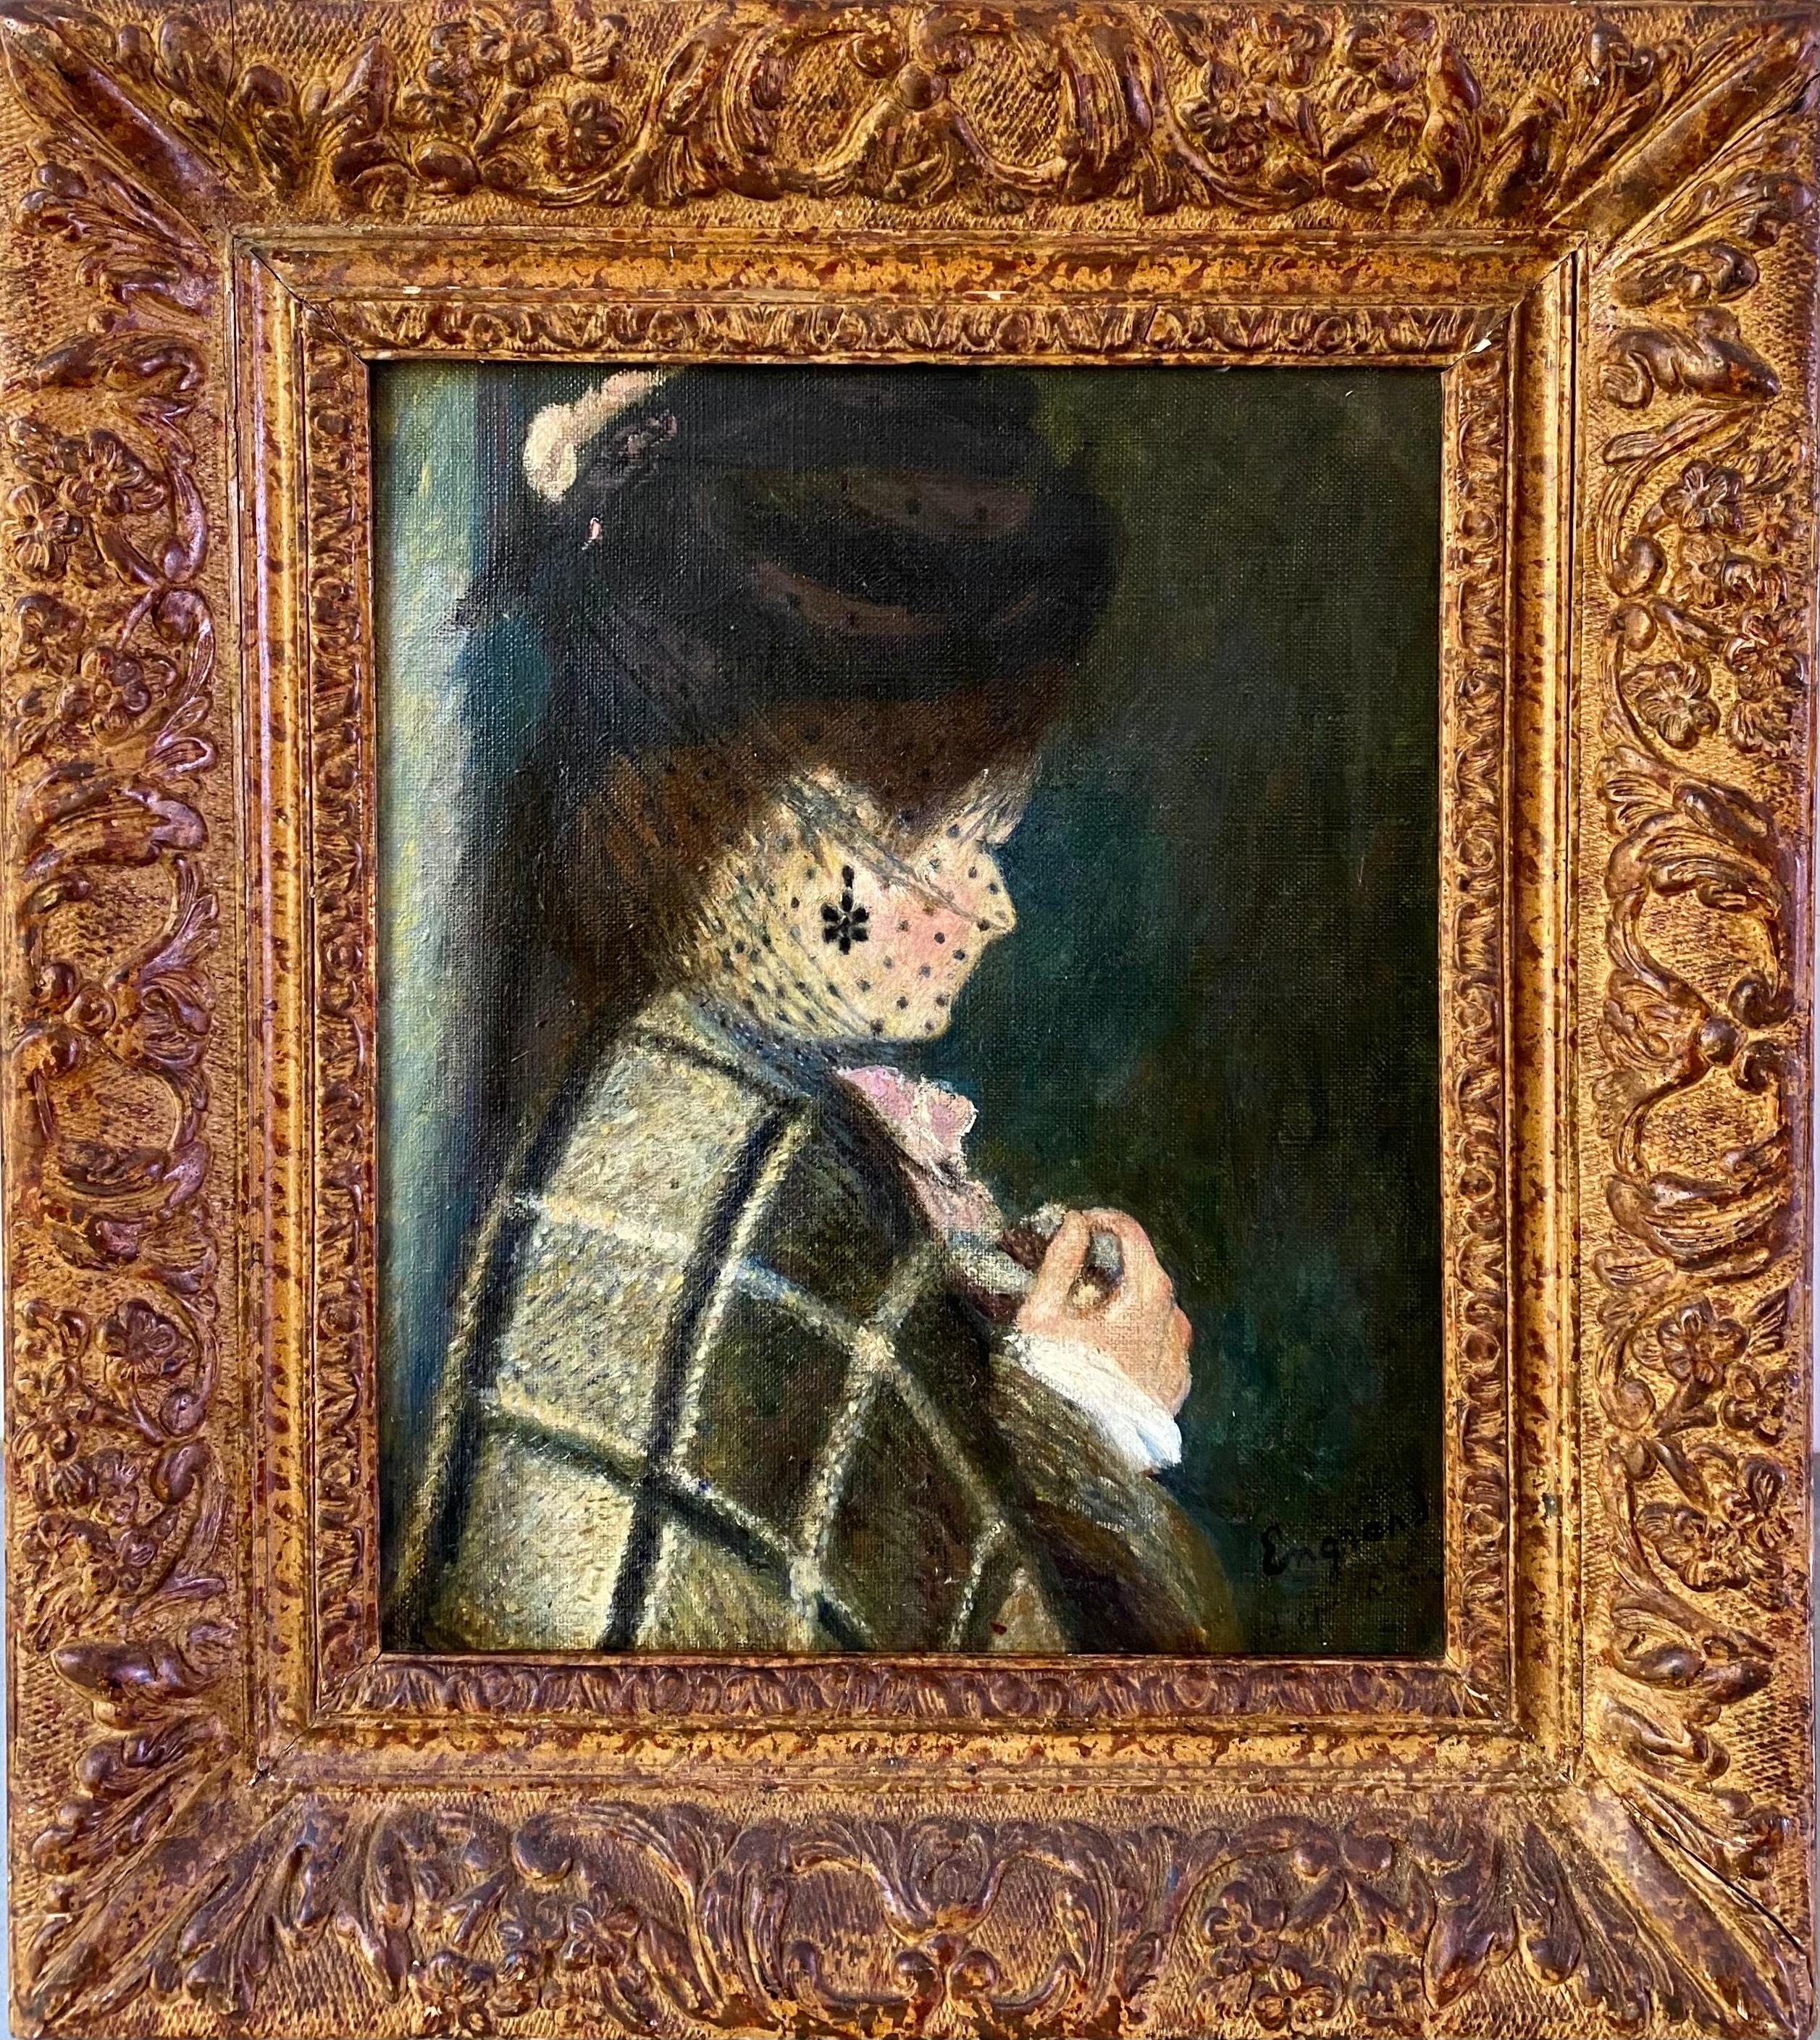 Auguste Renoir Figurative Painting - French impressionist portrait painting - Femme en profil - female artist Paris